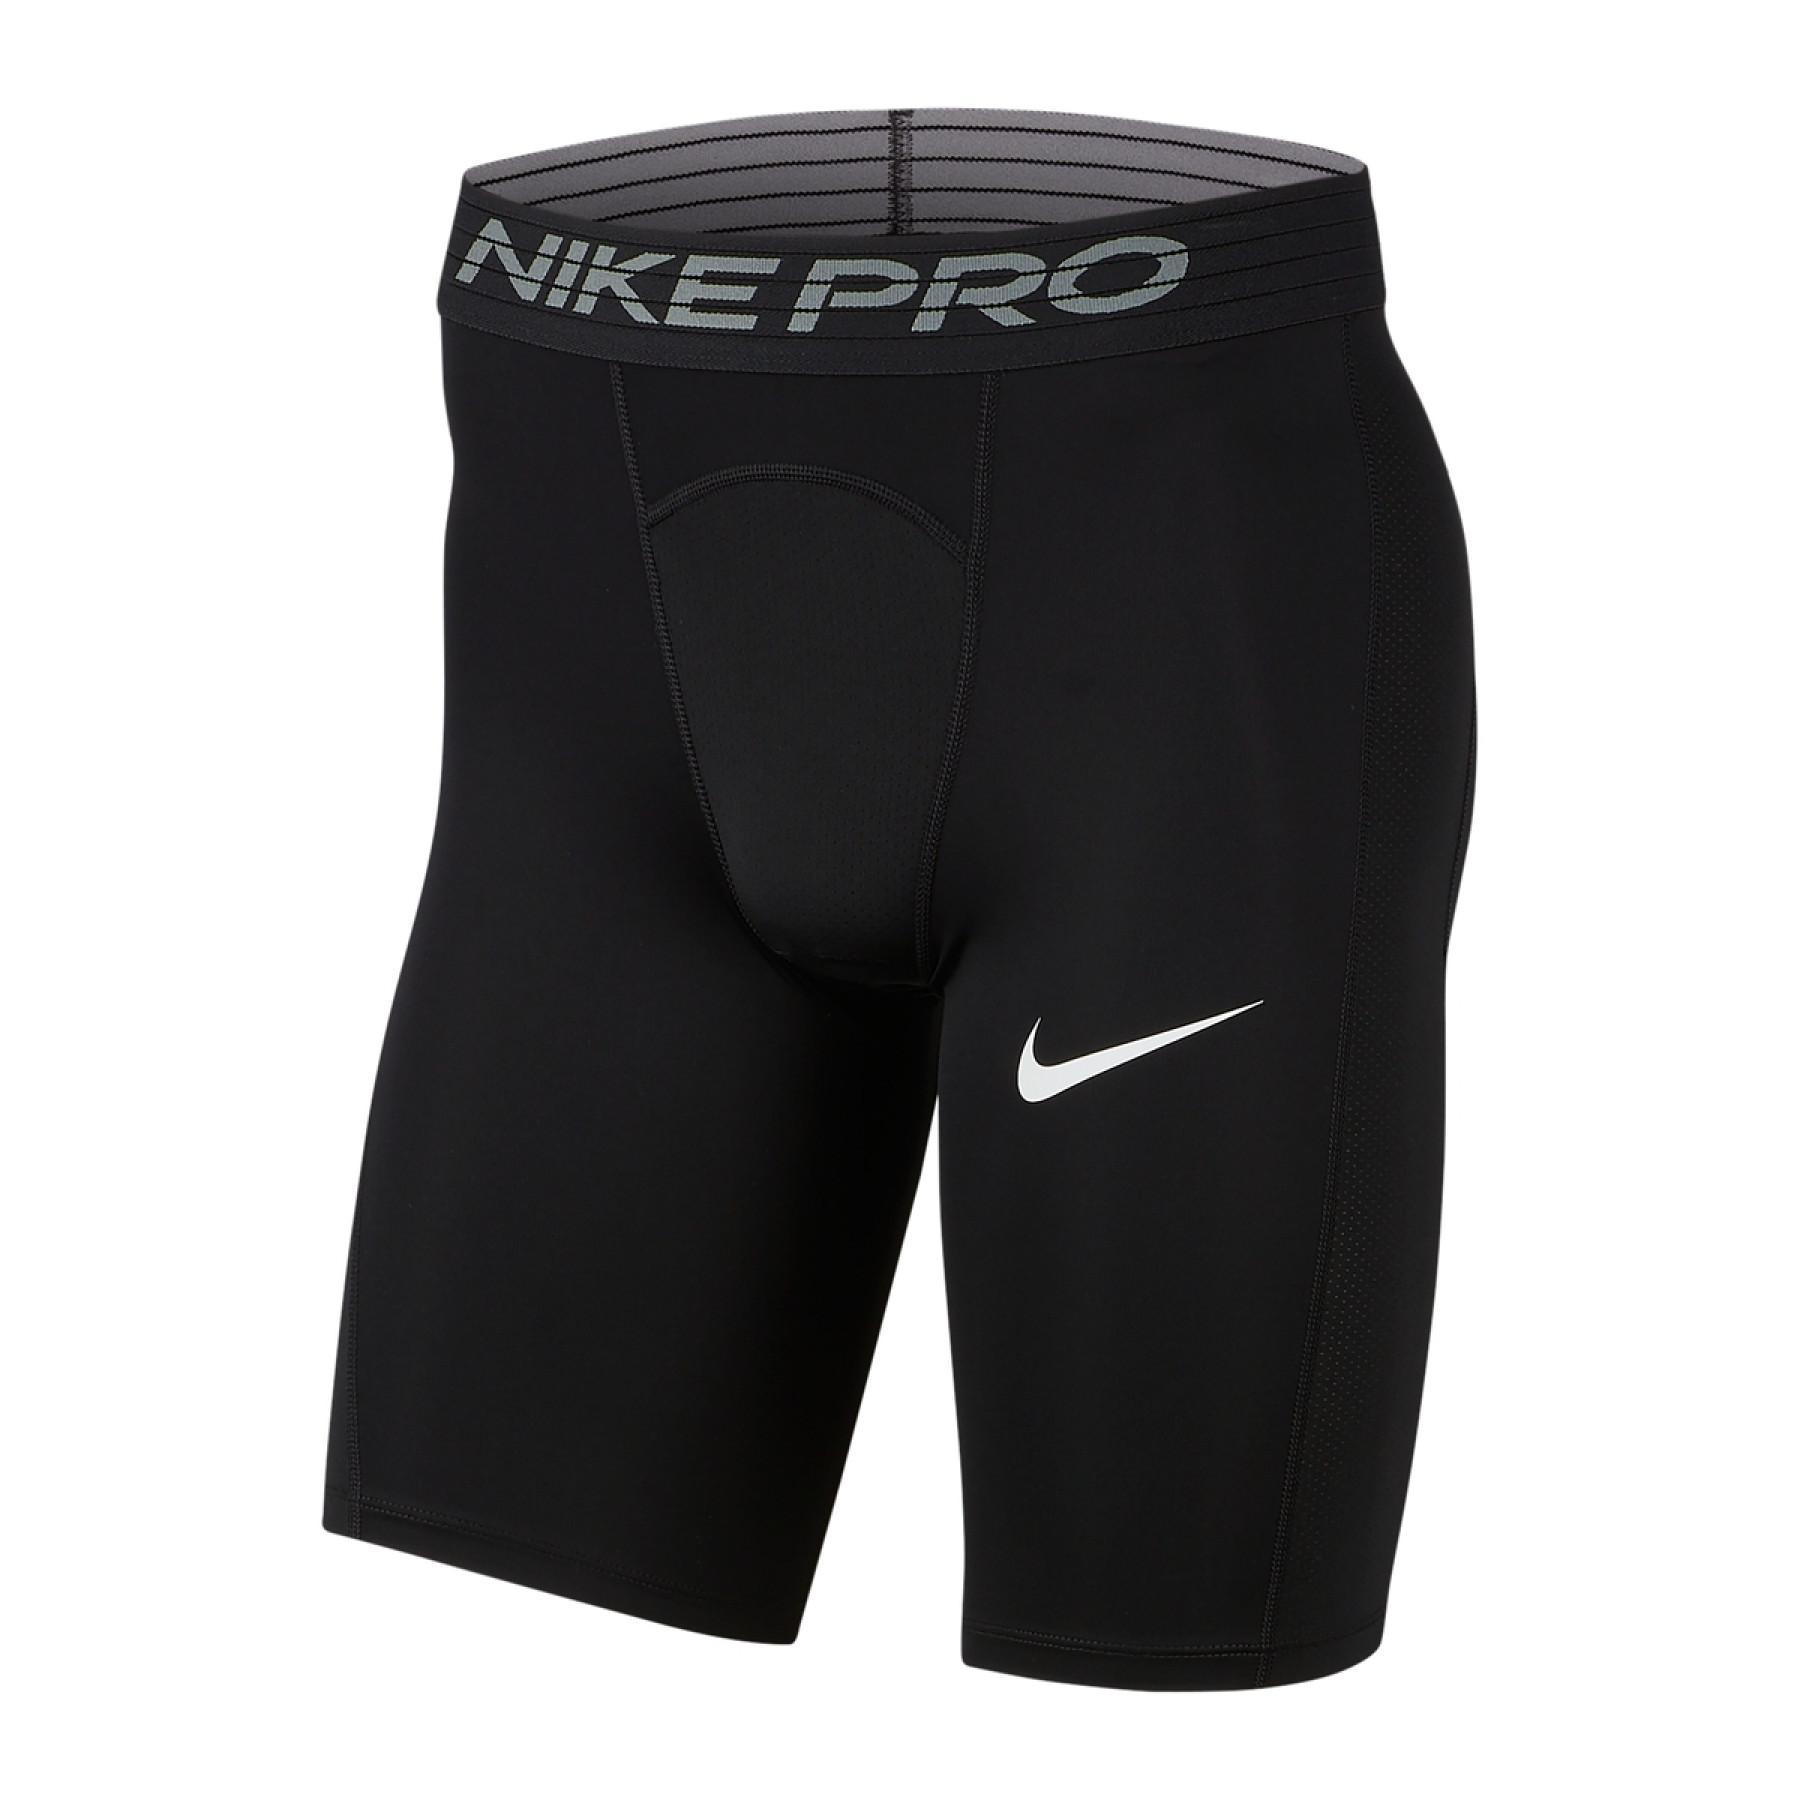 black and white nike pro shorts